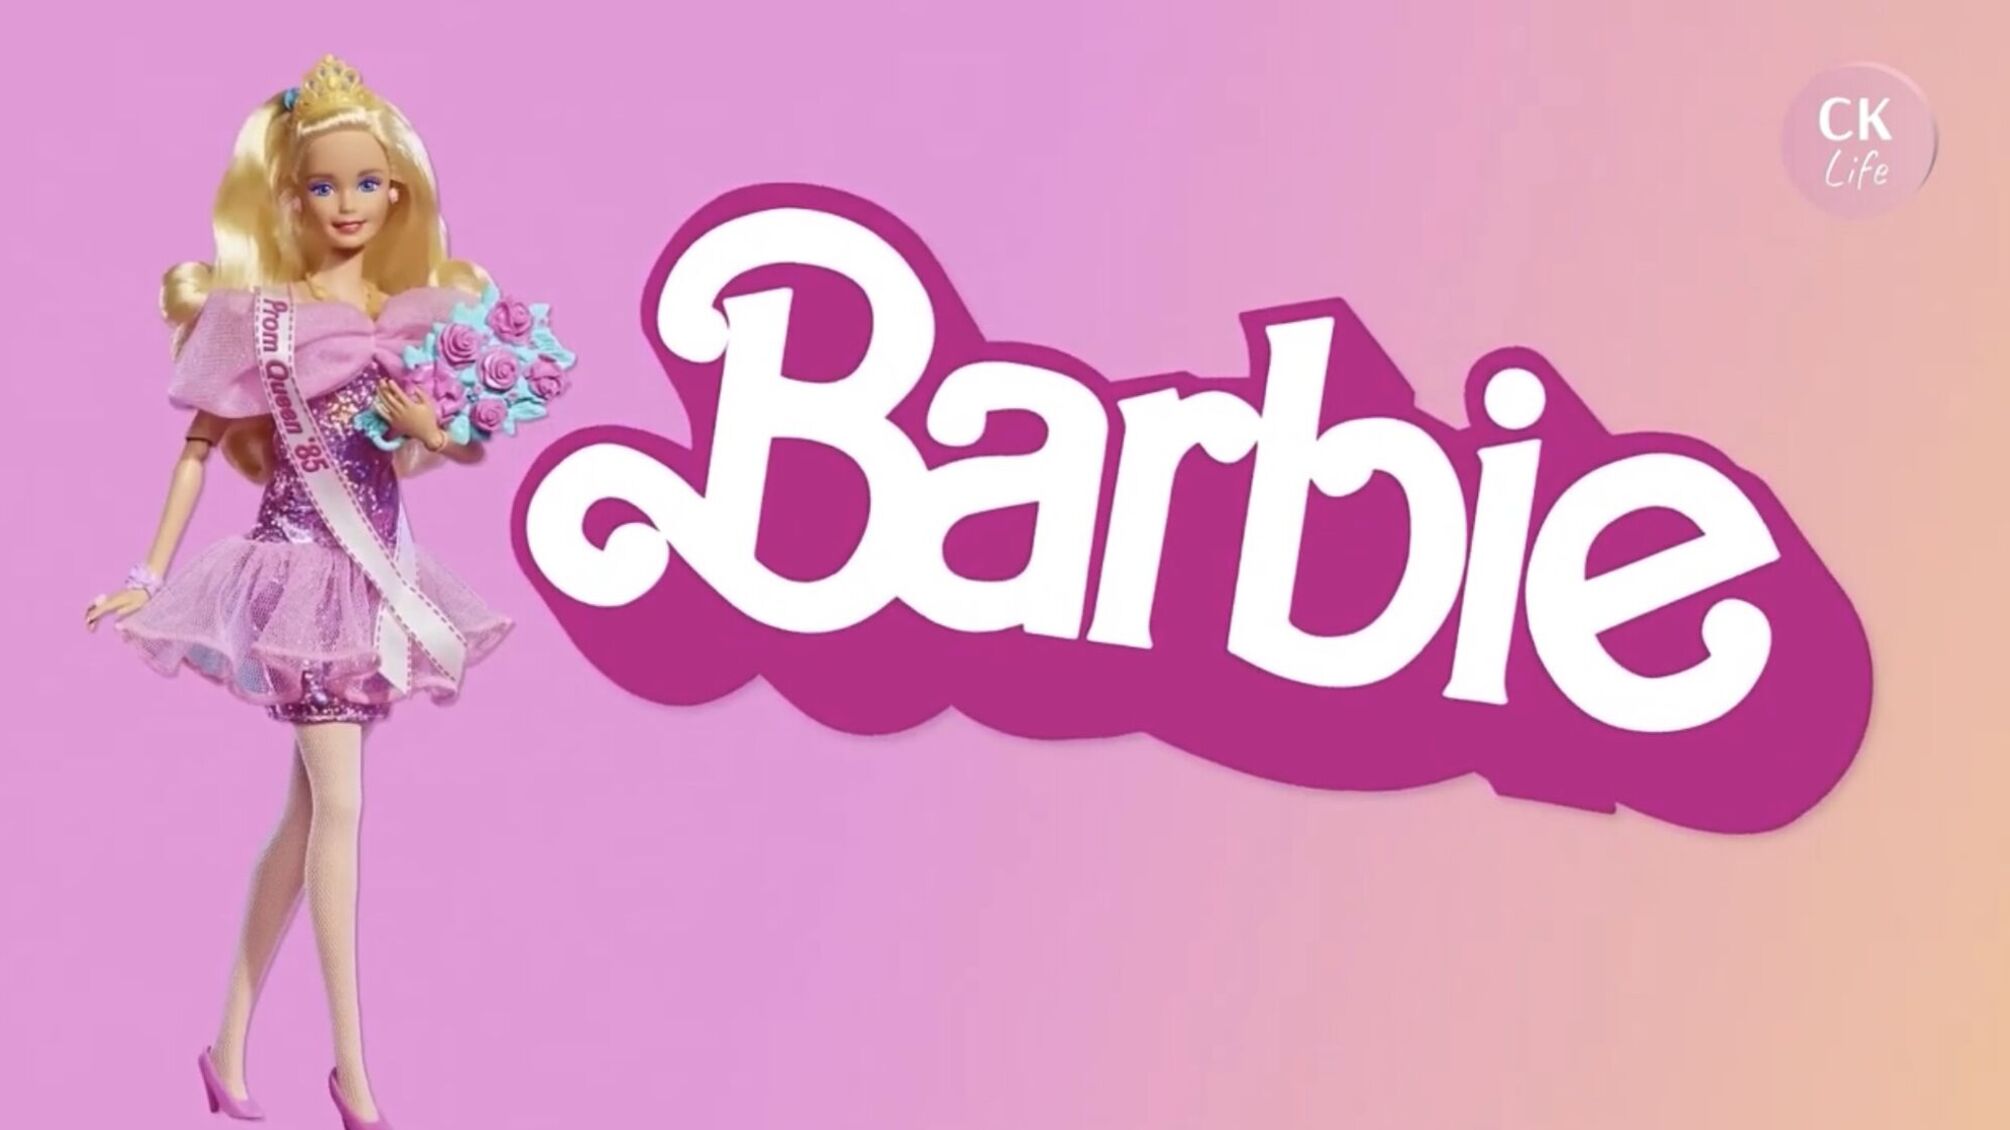 От любимого идеала к объекту критики: как Барби влияет на формирование стереотипов